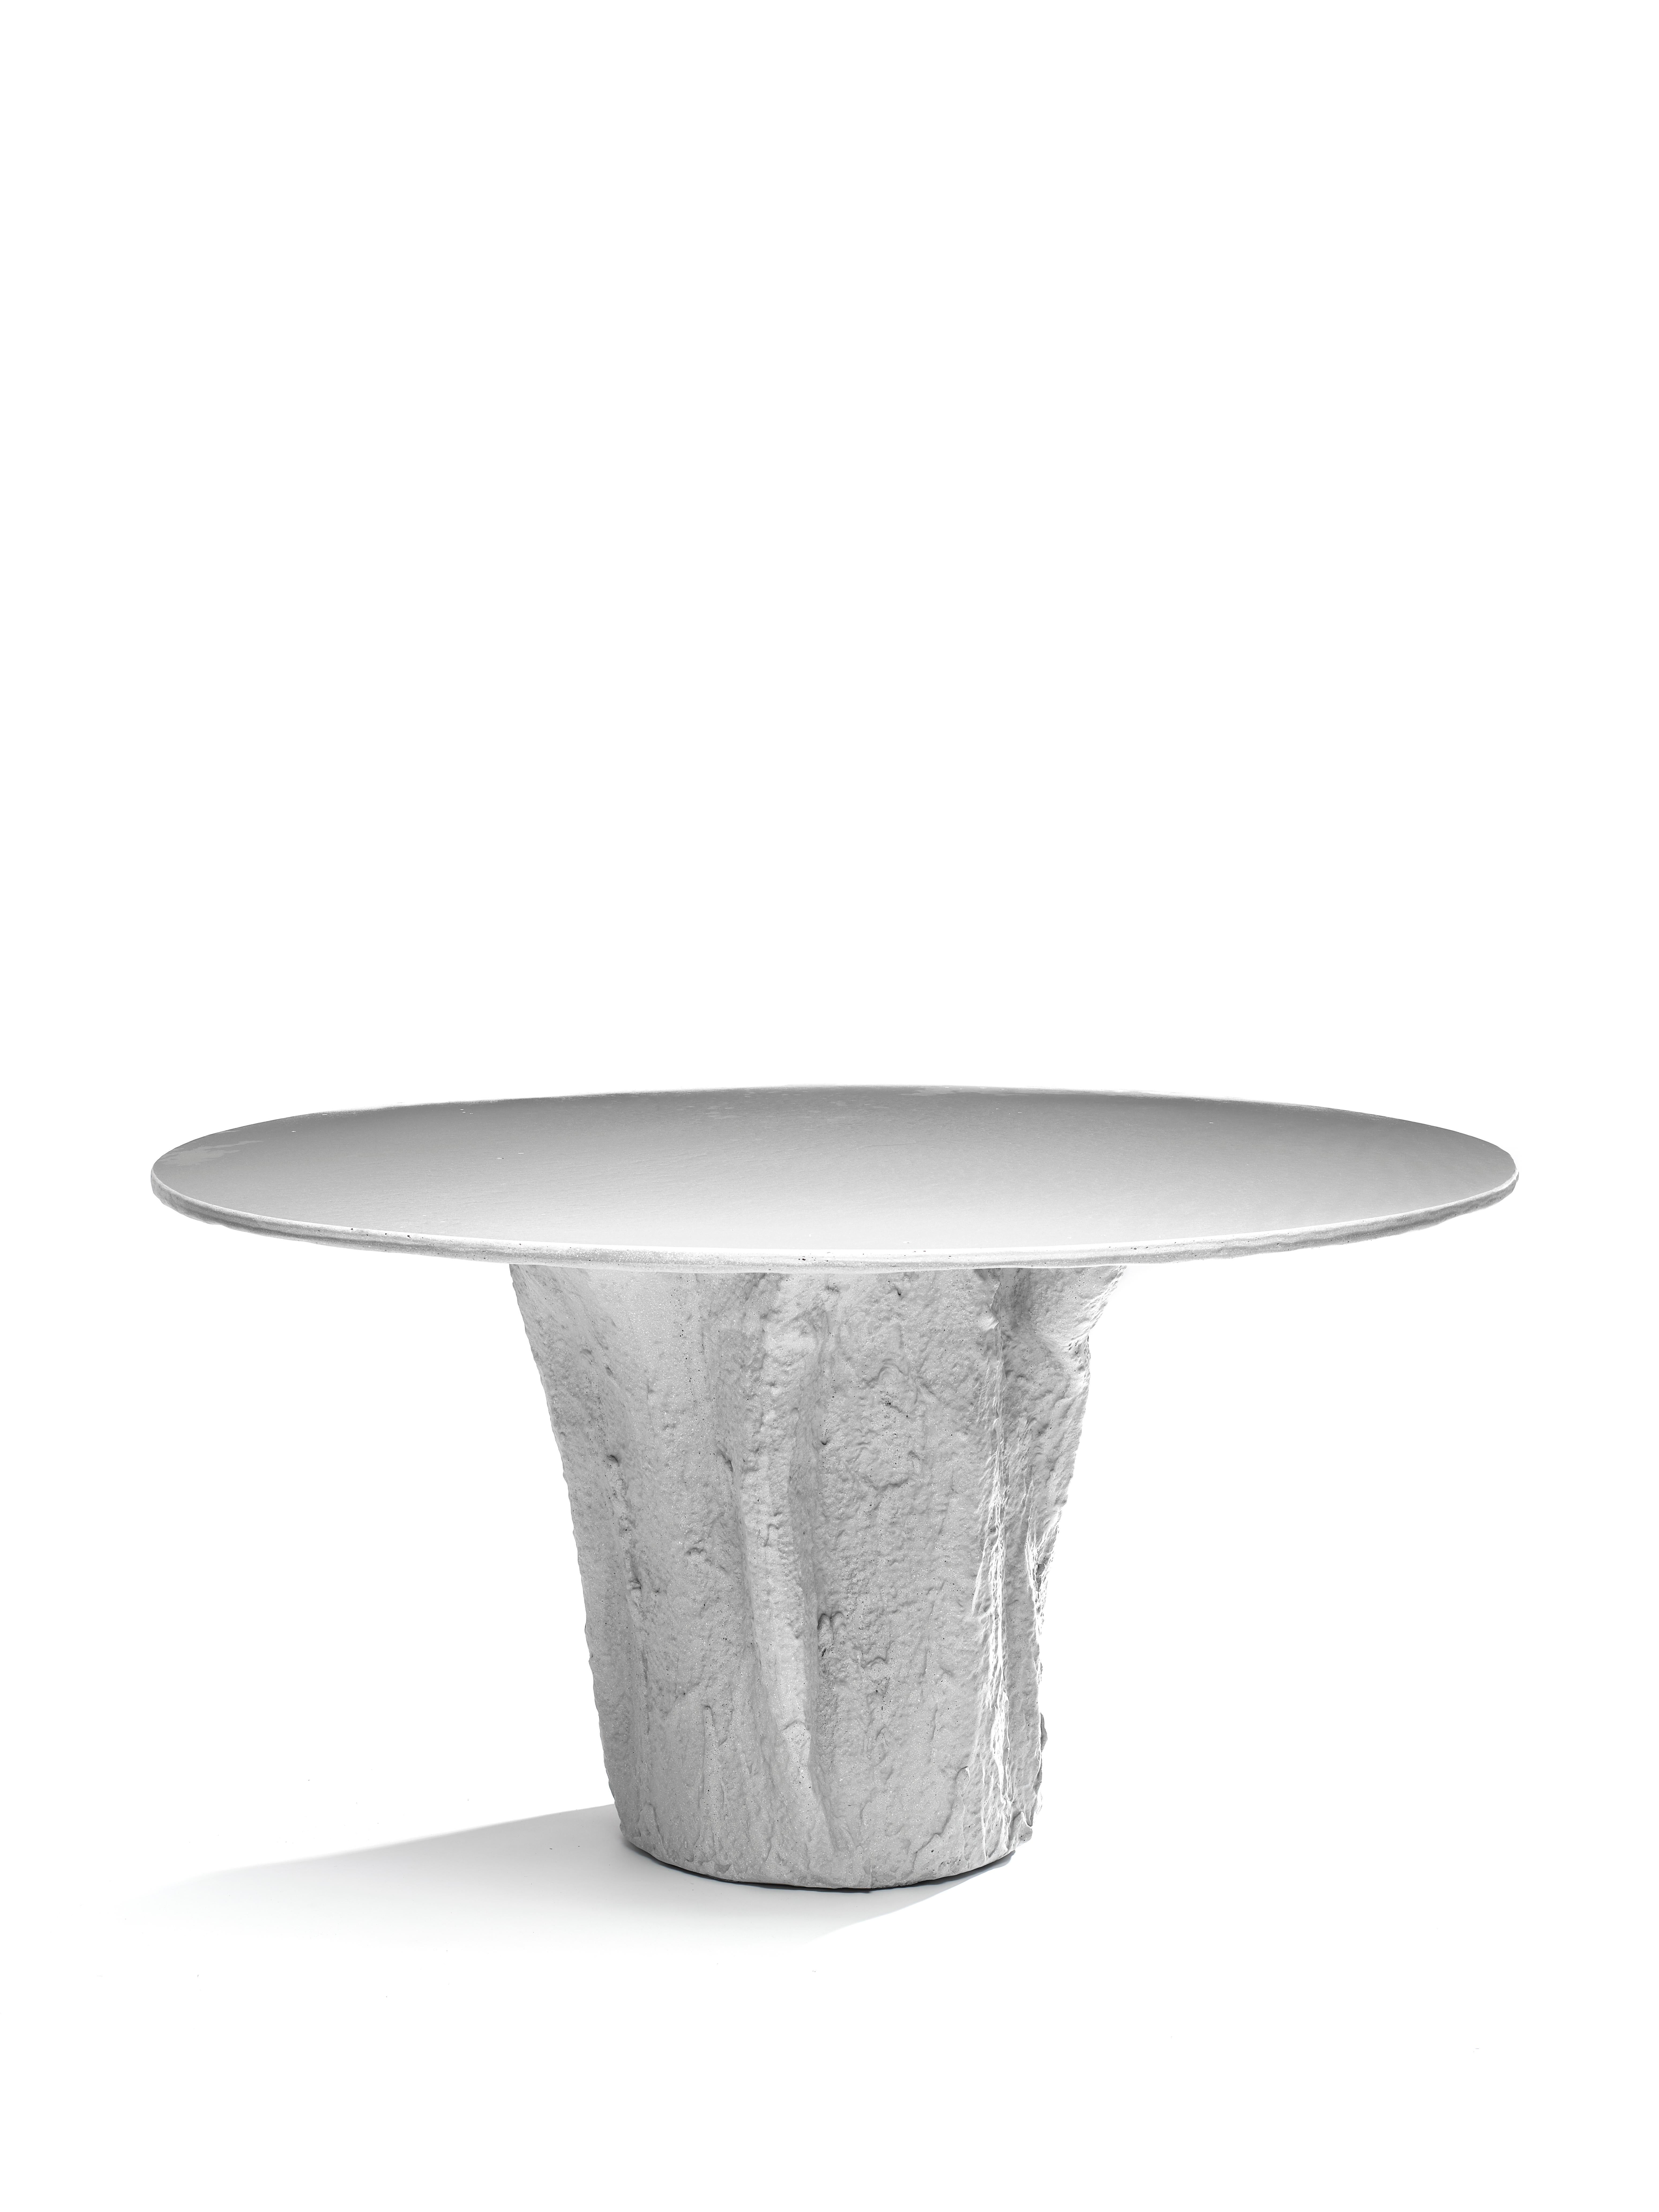 La table gris clair de la série Kernel est une pièce unique entièrement réalisée à la main par le designer. Entièrement construit en Glebanite, un mélange spécial de fibres de verre recyclées et recyclables. Une œuvre artistique d'économie